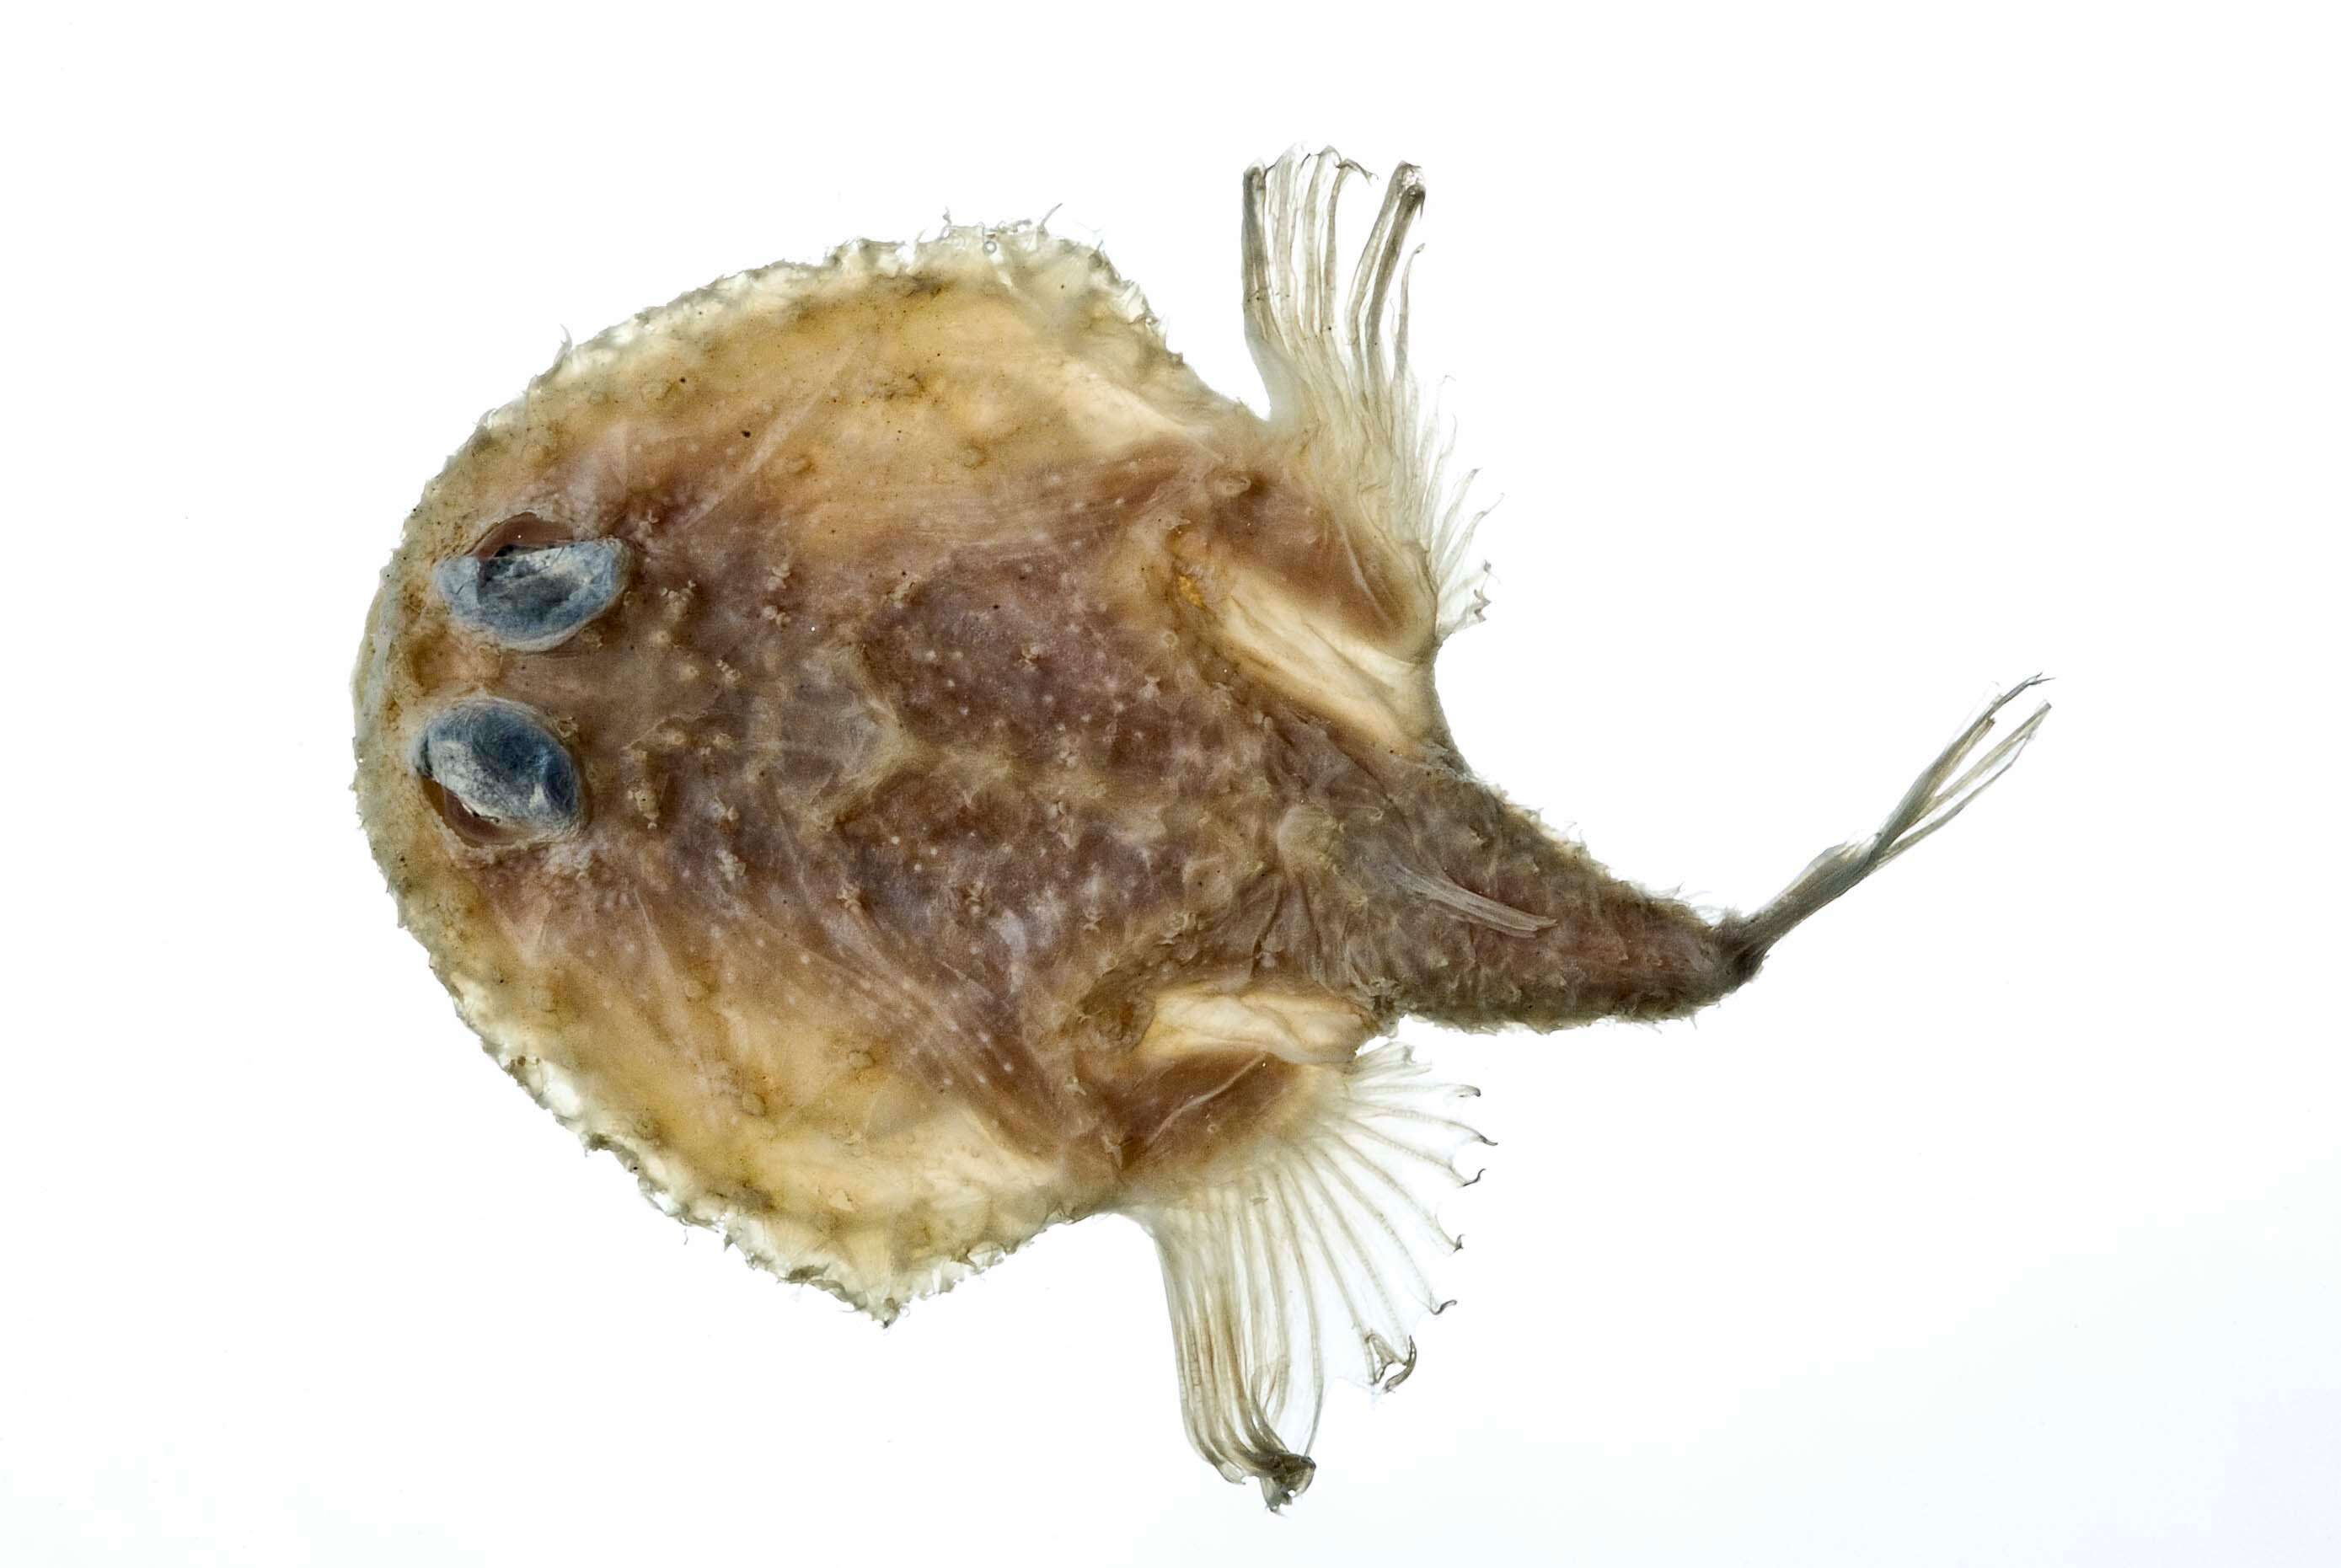 Image of Spiny batfish